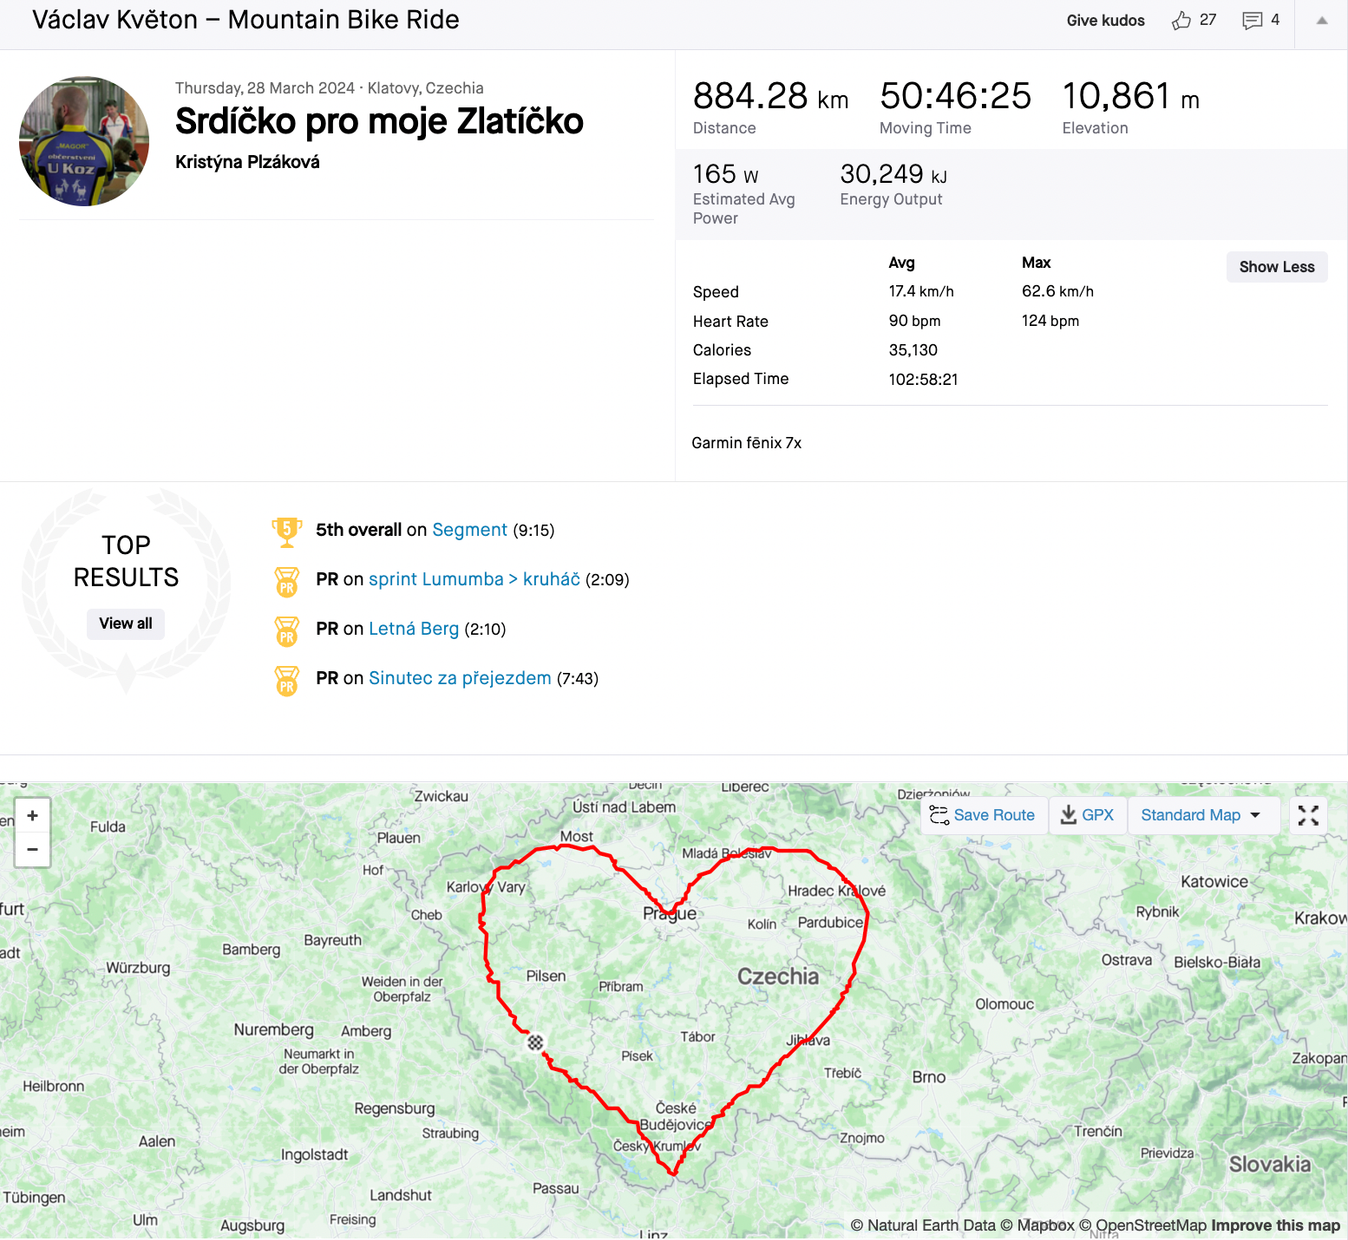 The giant love heart covers a big chunk of Czechia